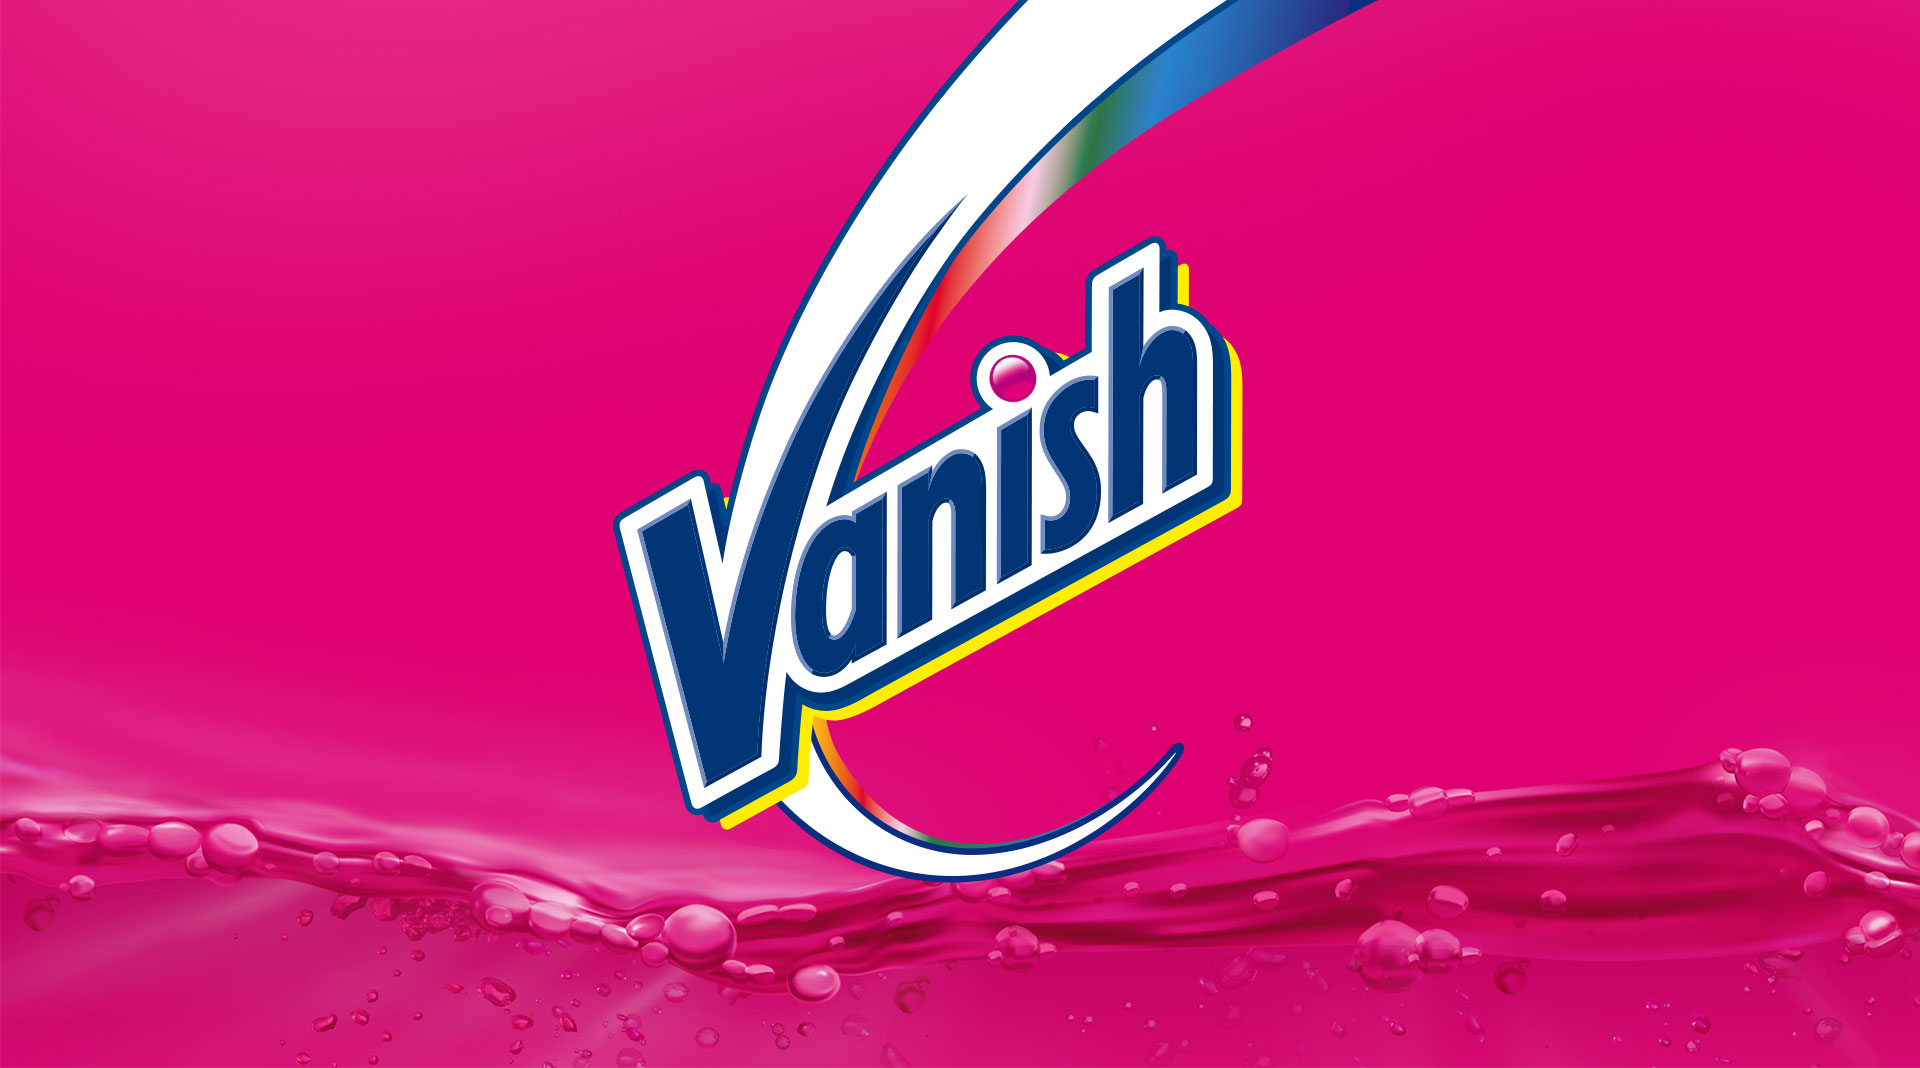 Vanish, a força do rosa